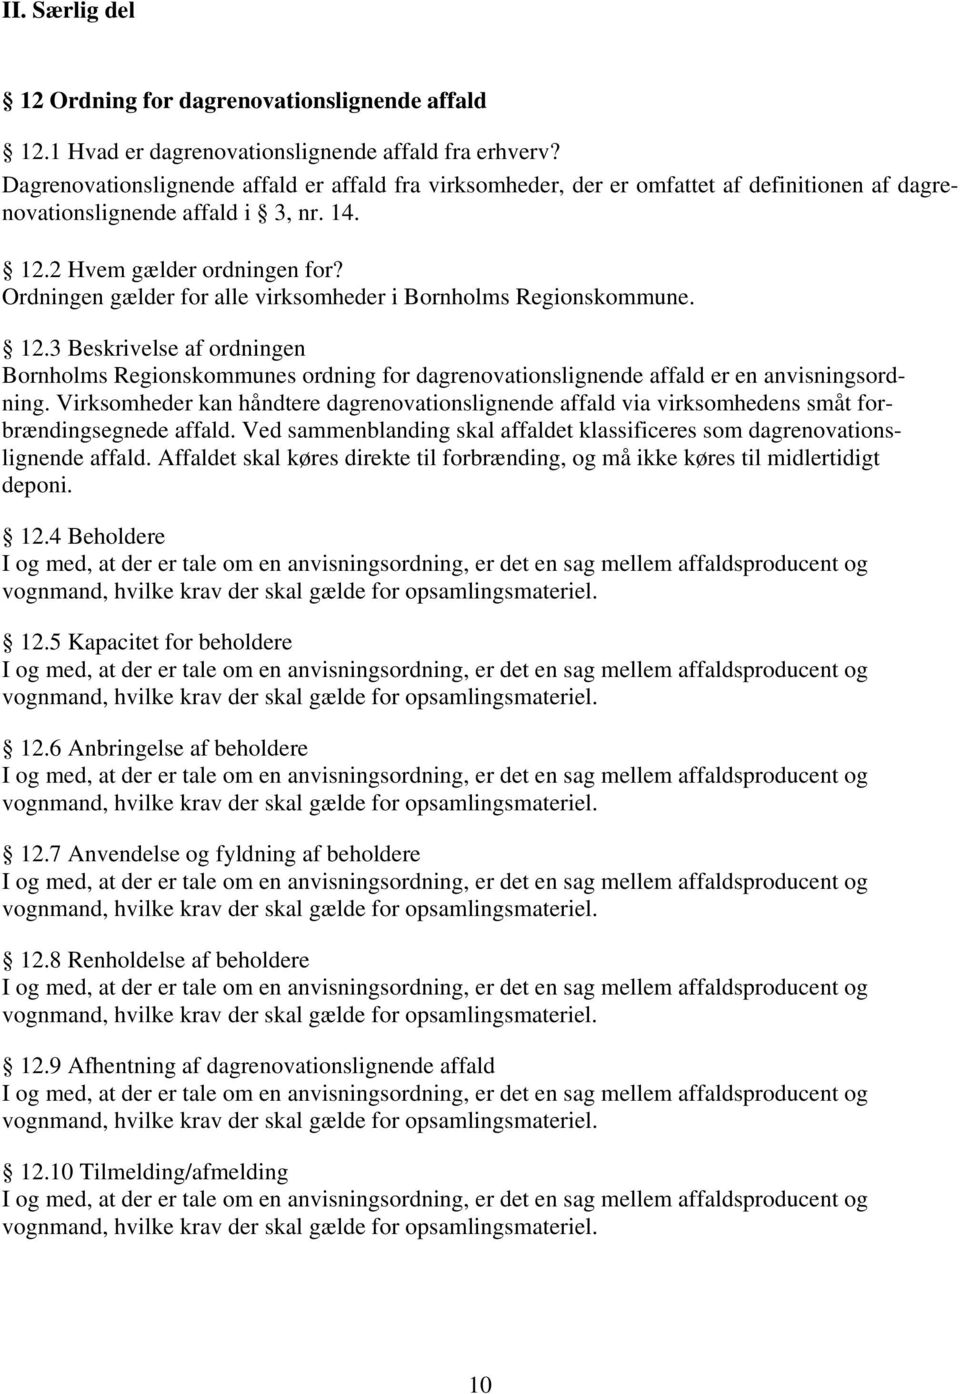 Ordningen gælder for alle virksomheder i Bornholms Regionskommune. 12.3 Beskrivelse af ordningen Bornholms Regionskommunes ordning for dagrenovationslignende affald er en anvisningsordning.